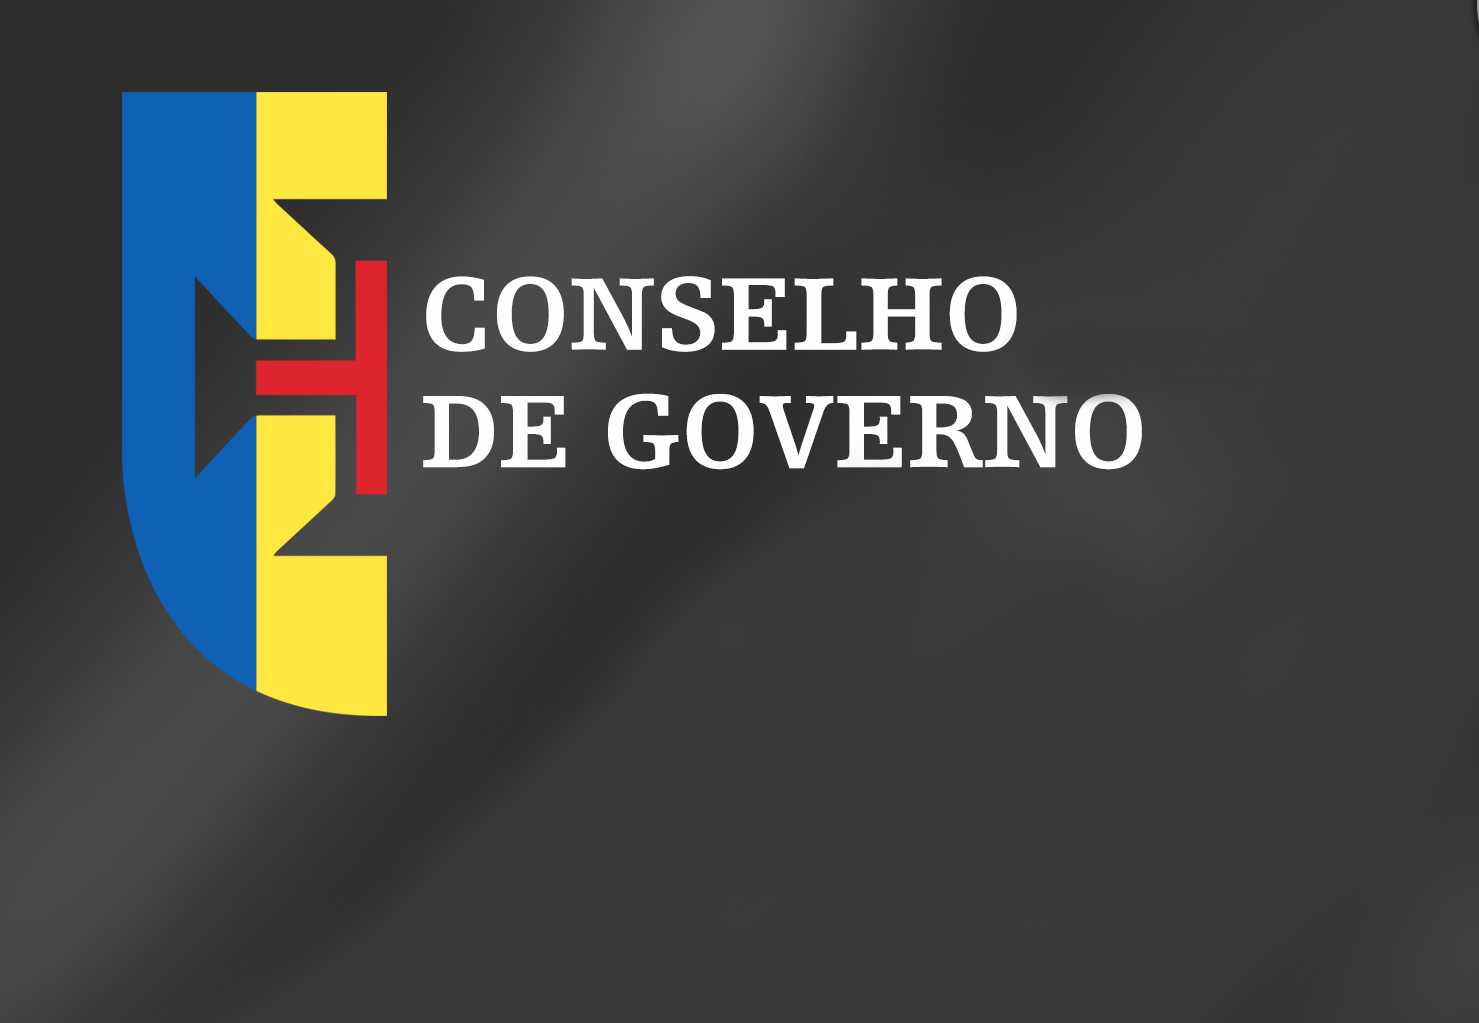 Conclusões Conselho de Governo - 28 janeiro 2021